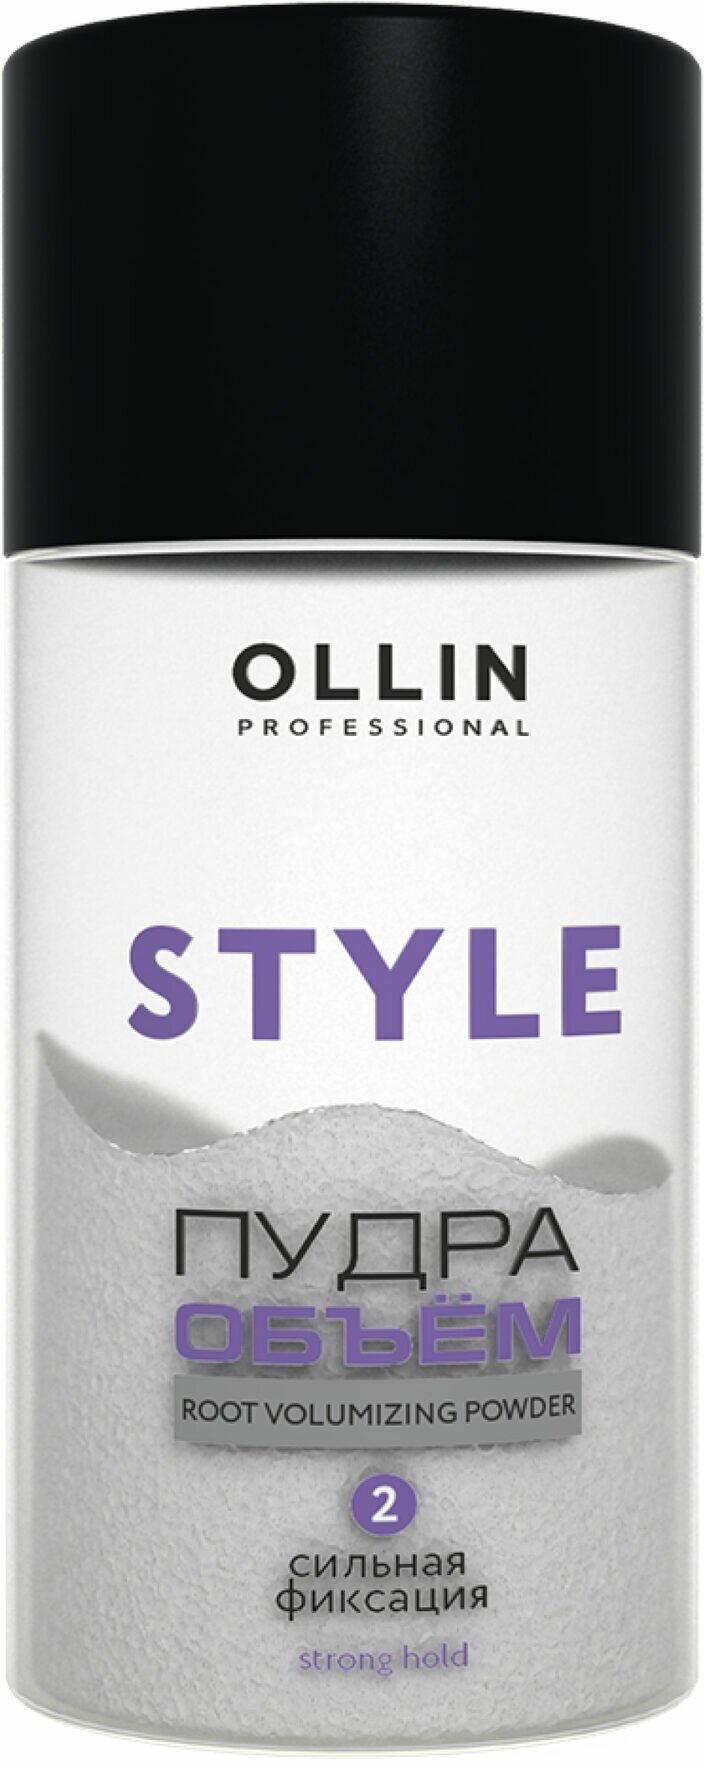 OLLIN STYLE Пудра для прикорневого объёма волос сильной фиксации 10г/ Strong Hold Powder